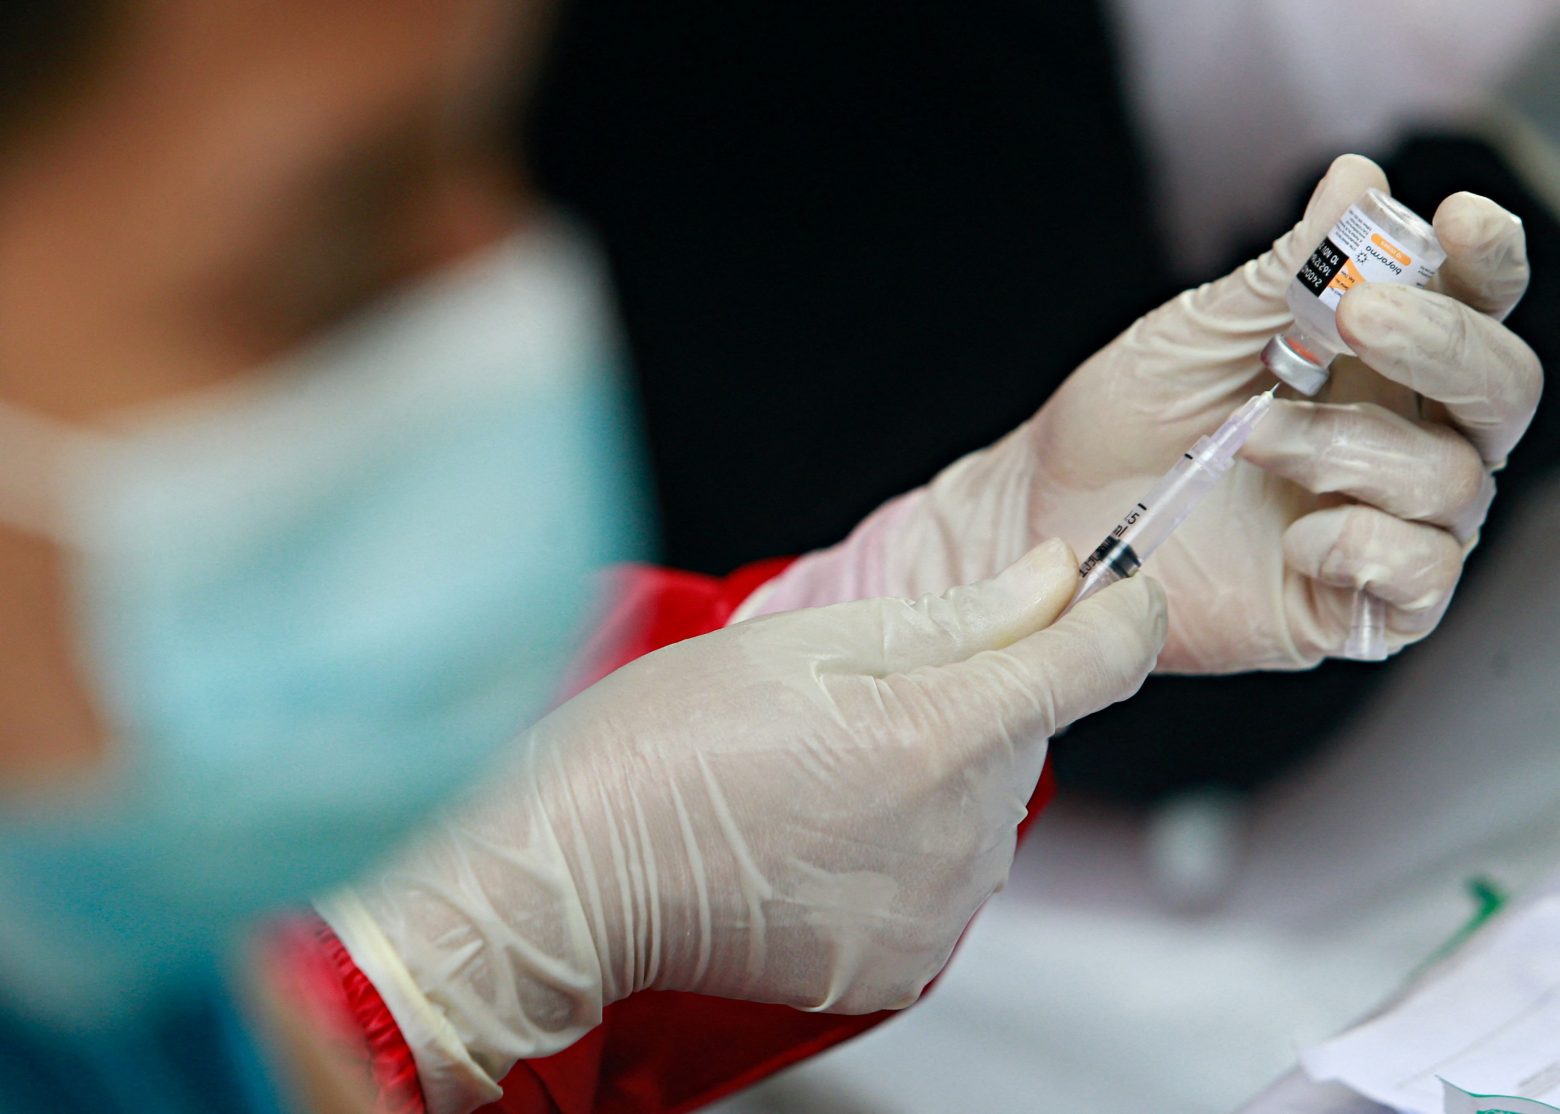 Τέλος και τα εμβόλια για τον κοροναϊό - Ποια χώρα σταματά τον εμβολιασμό